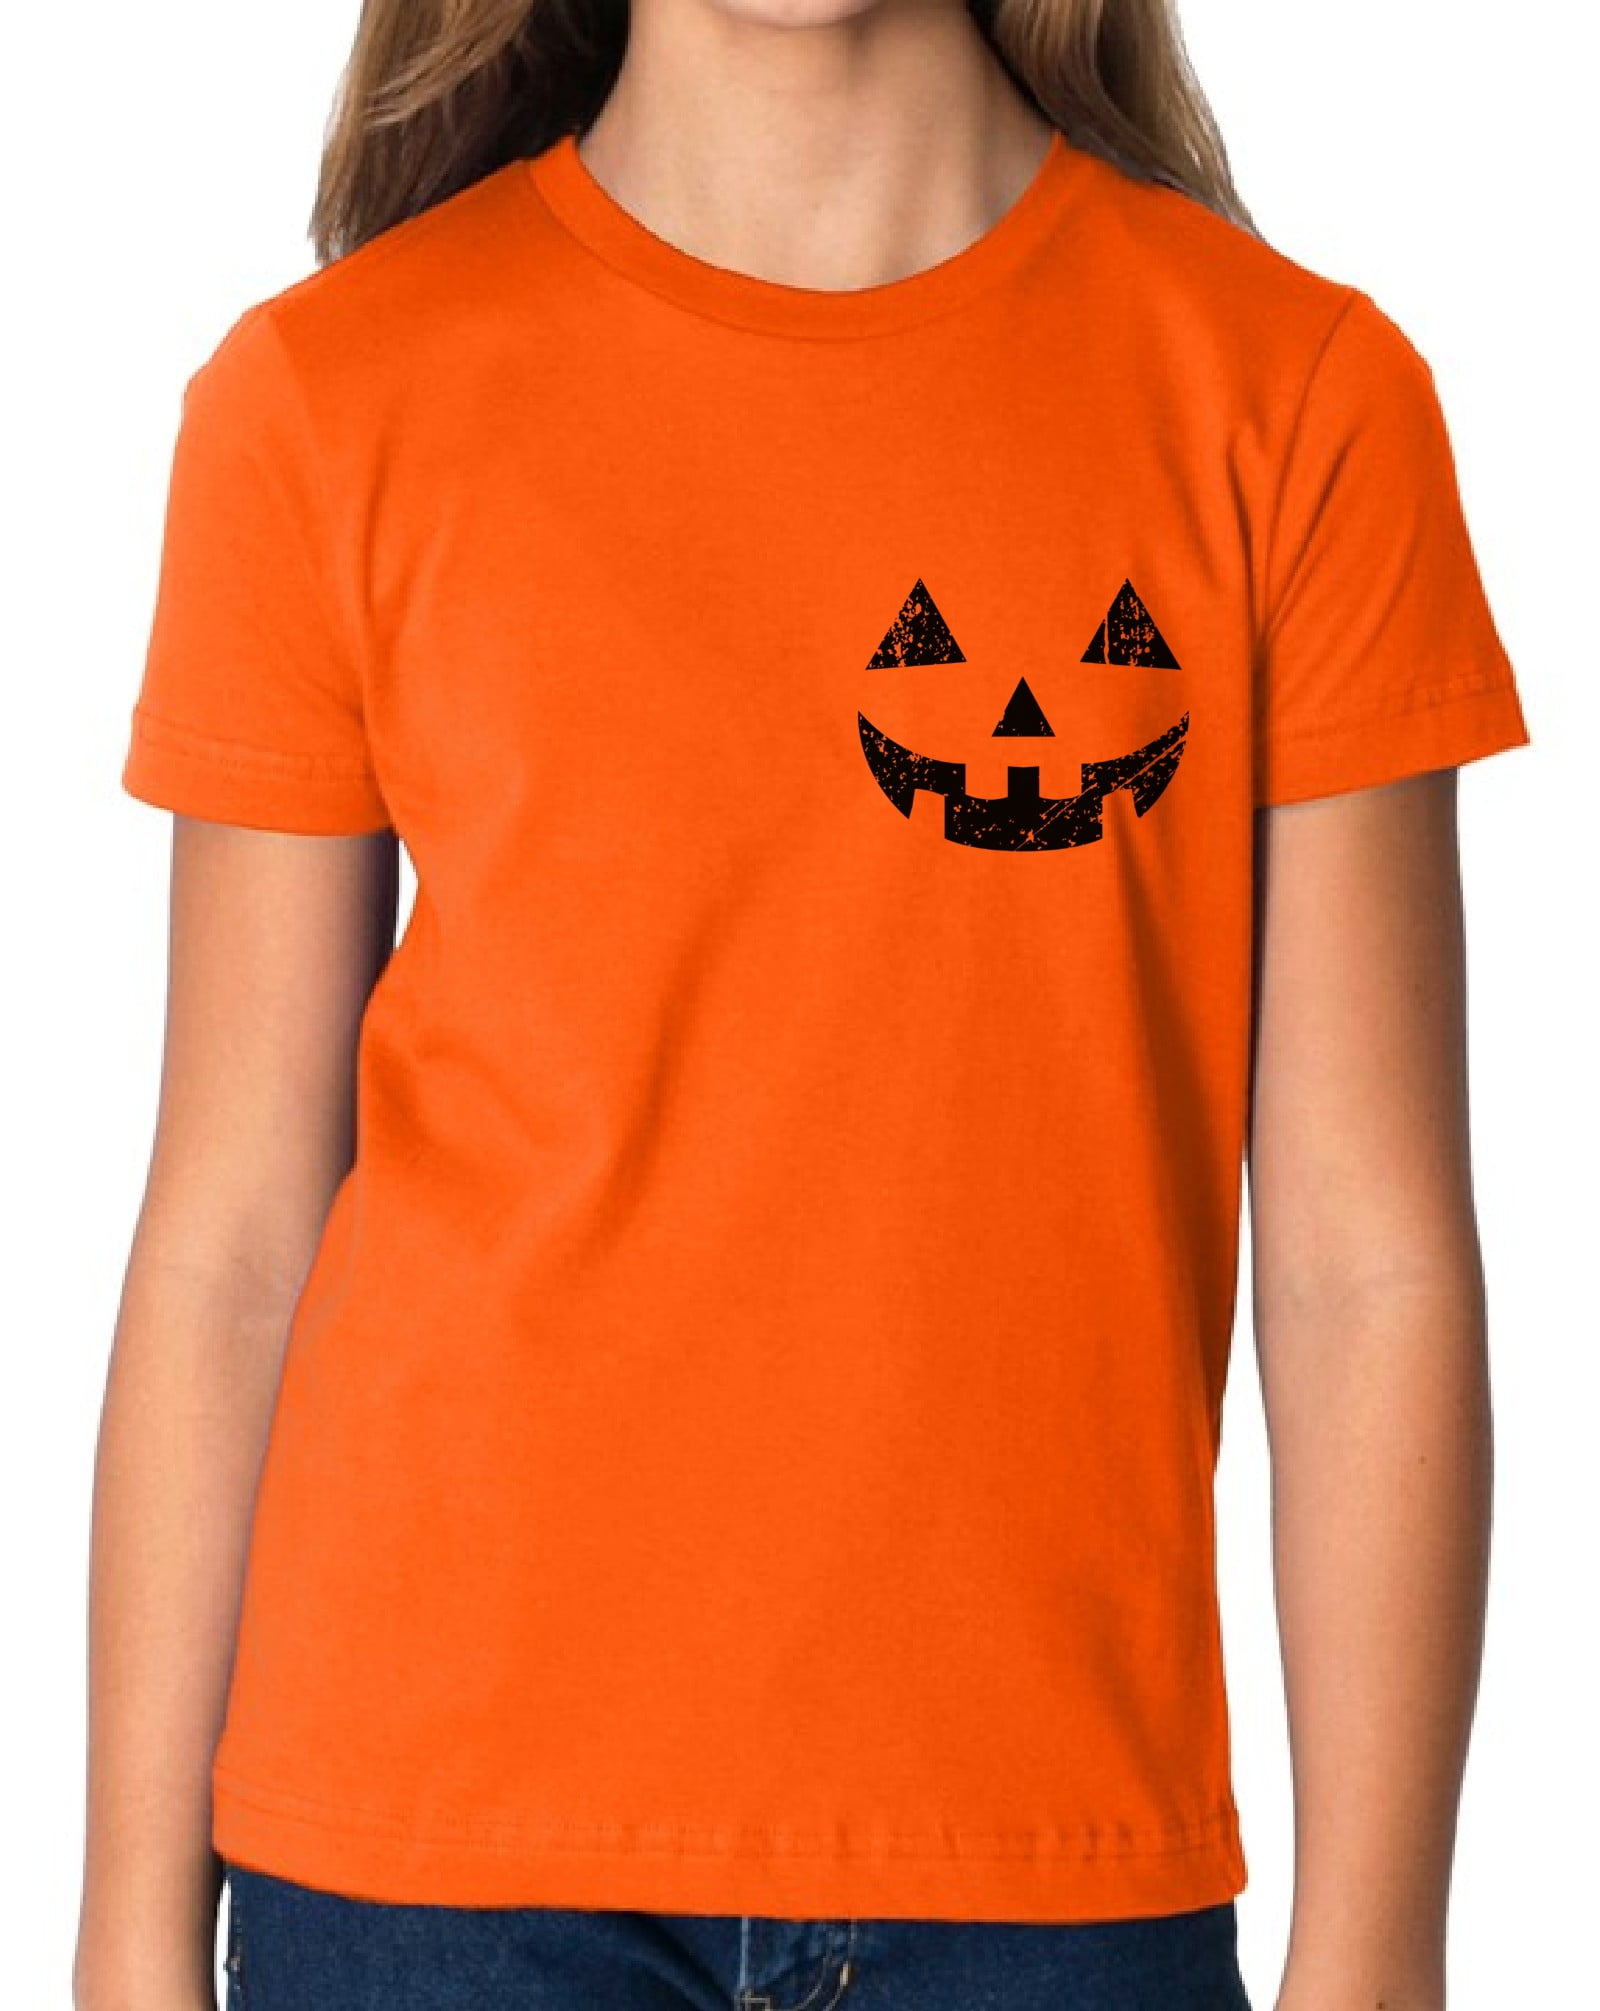 Boys Halloween Long Sleeve Pumpkin Graphic Tee